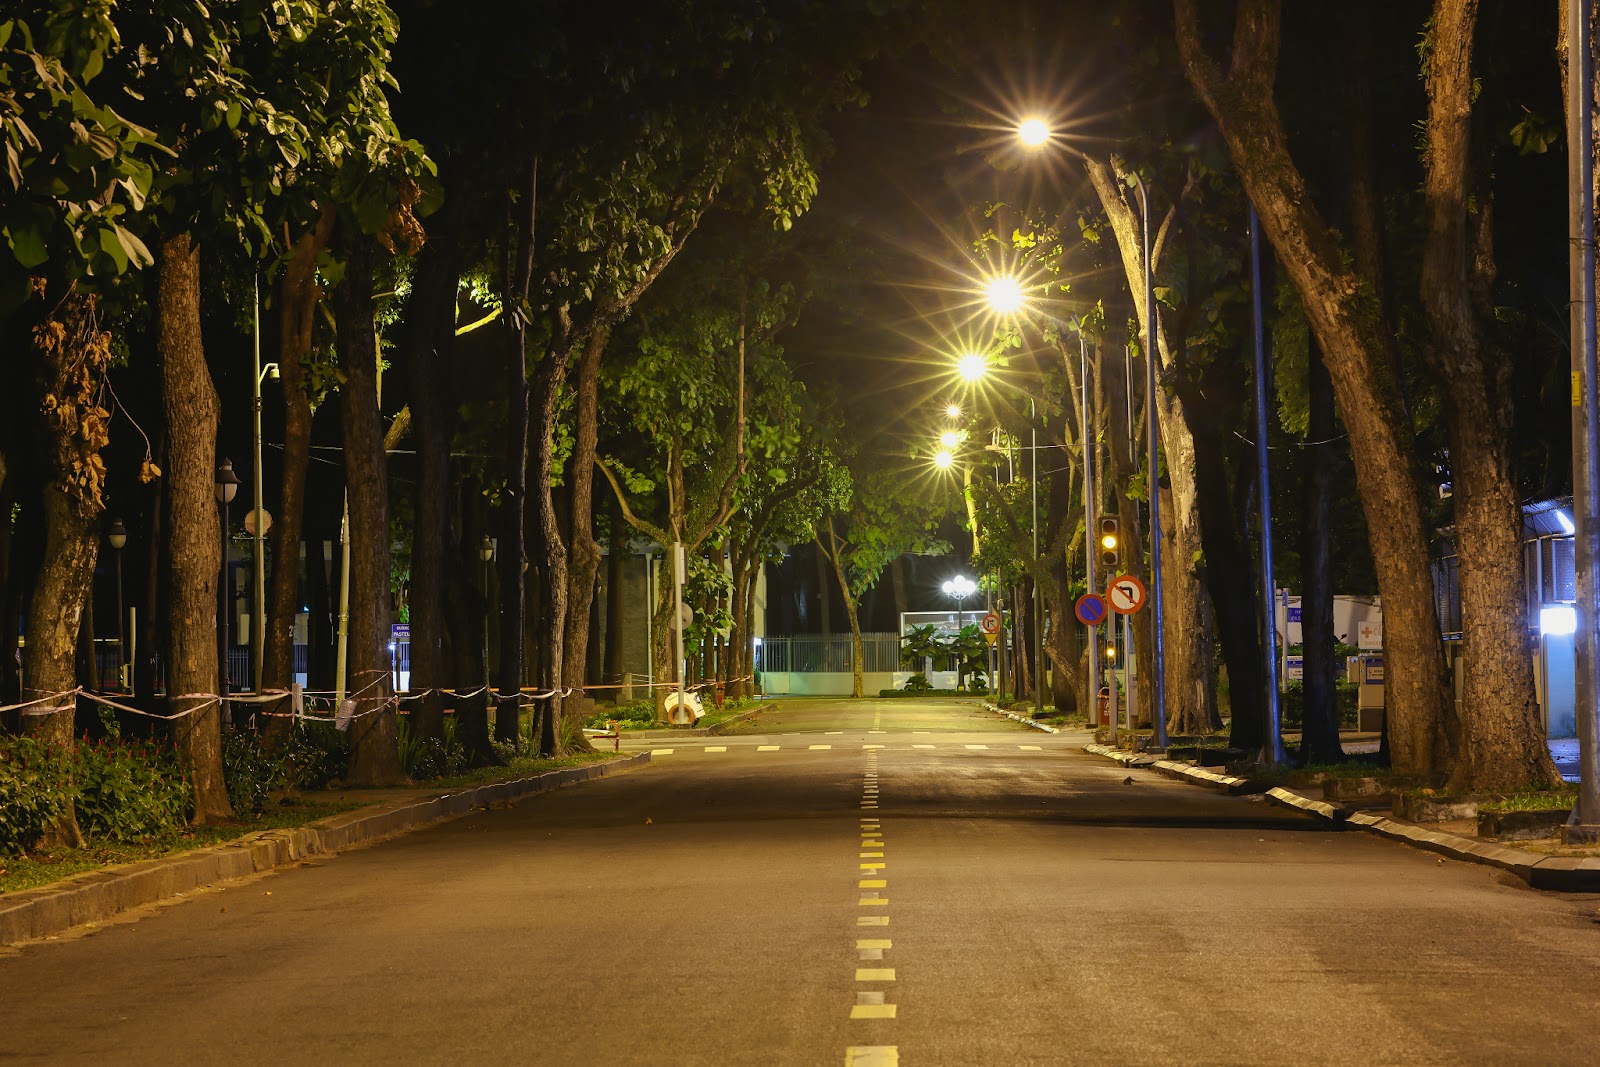 “Bổ túc” đường phố Sài Gòn lúc lên đèn dành cho người ở nhà lâu quá - 7